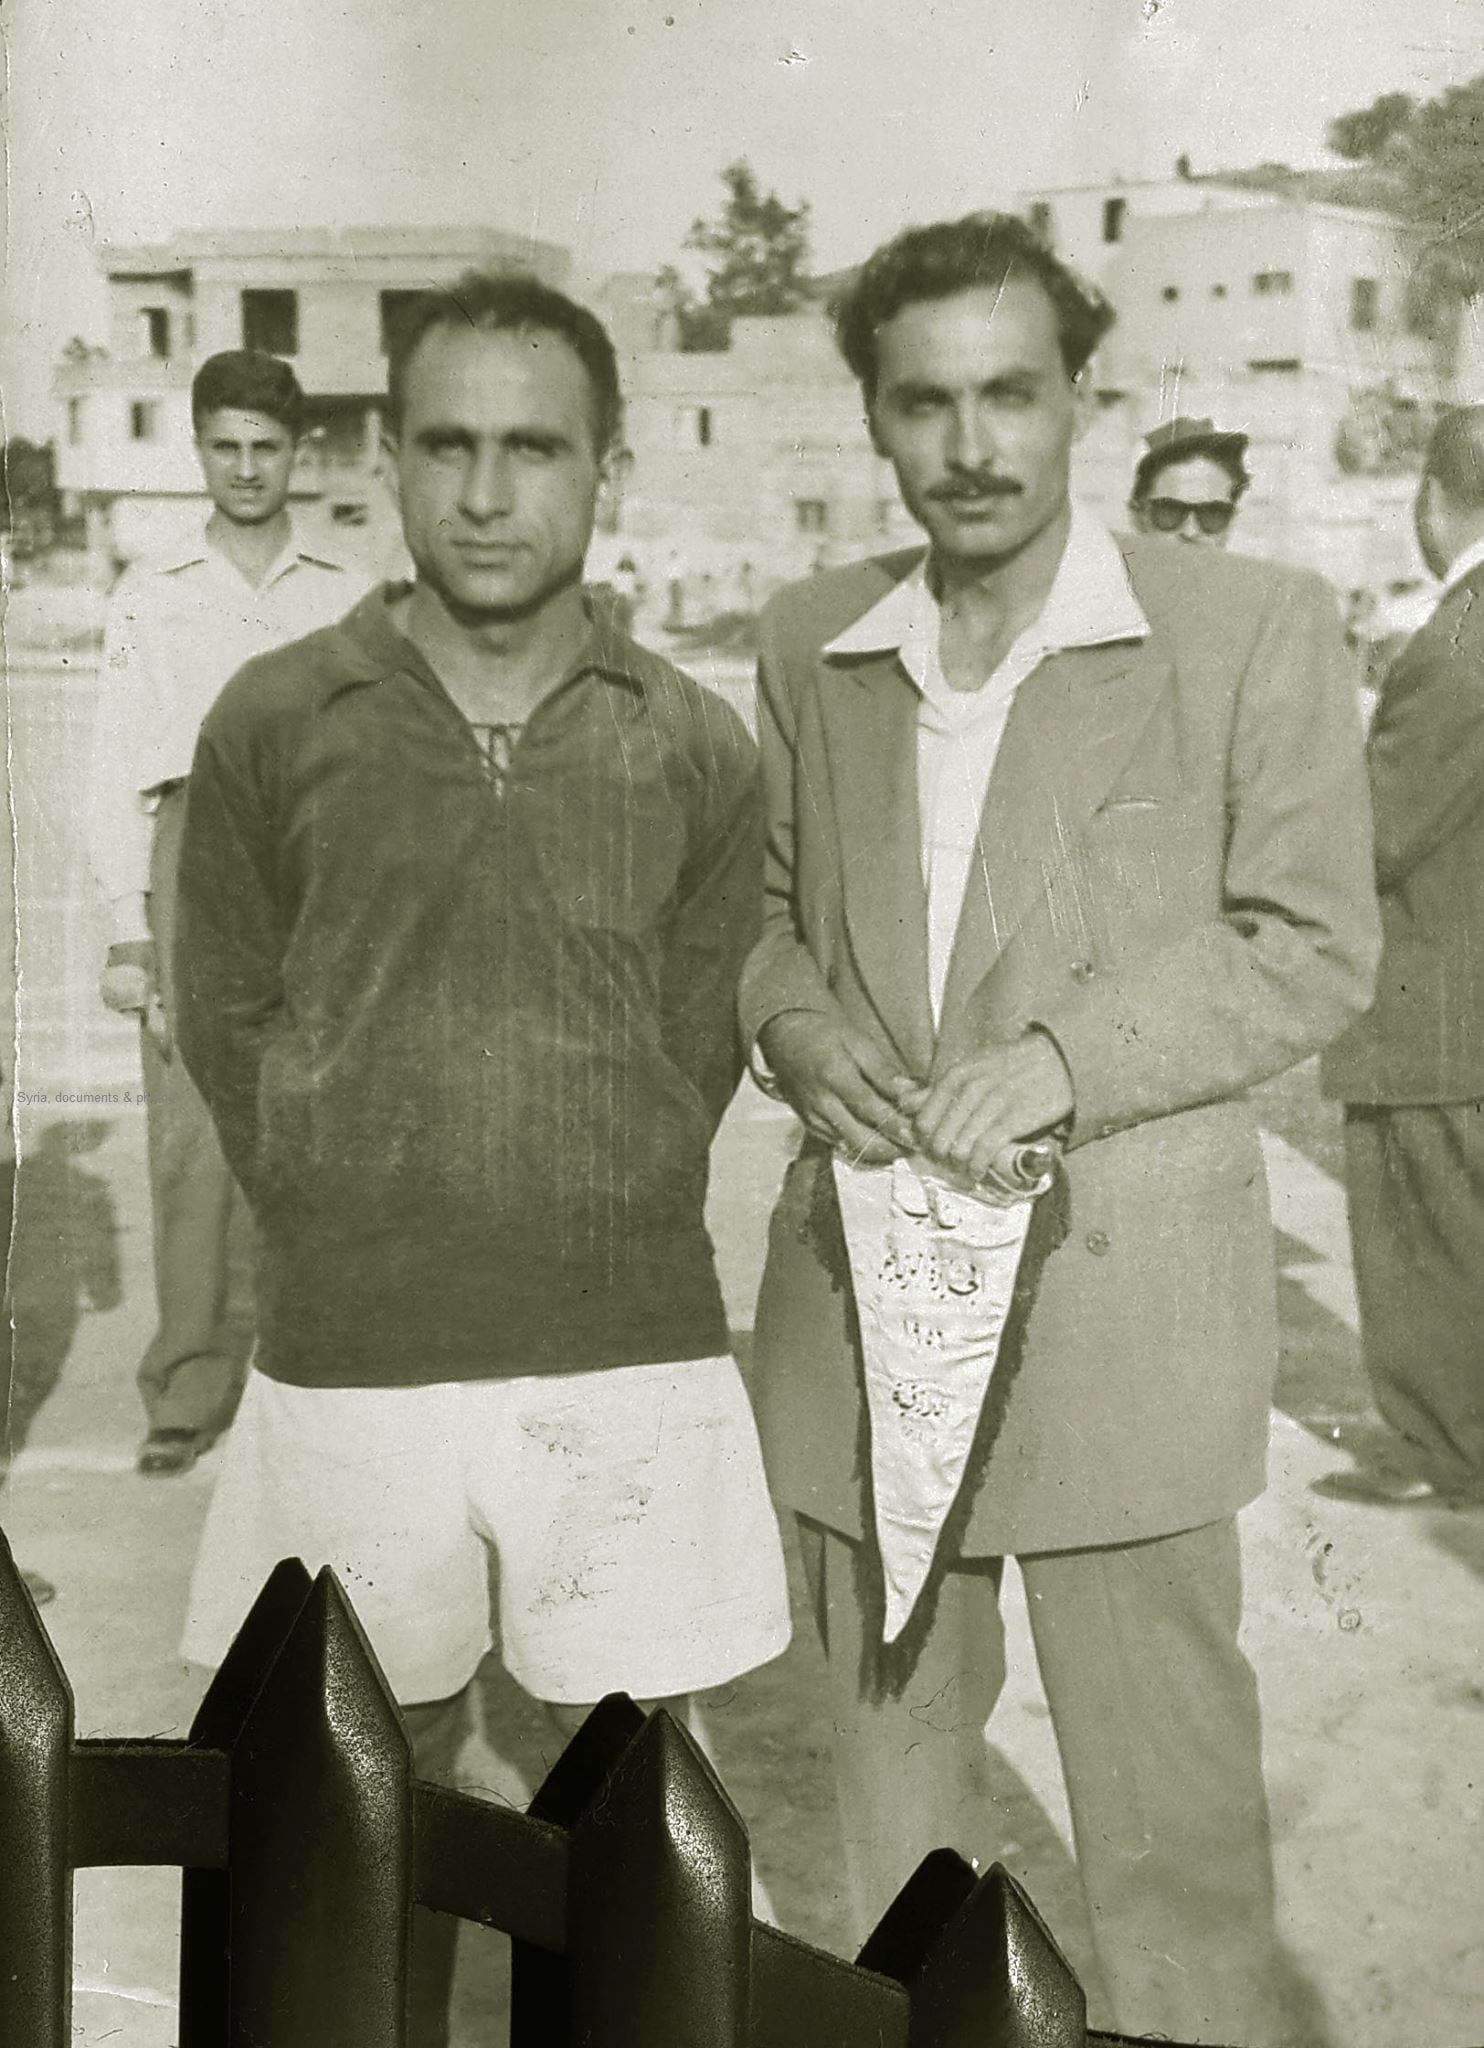 التاريخ السوري المعاصر - نادي الجزيرة الرياضي في اللاذقية عام 1956